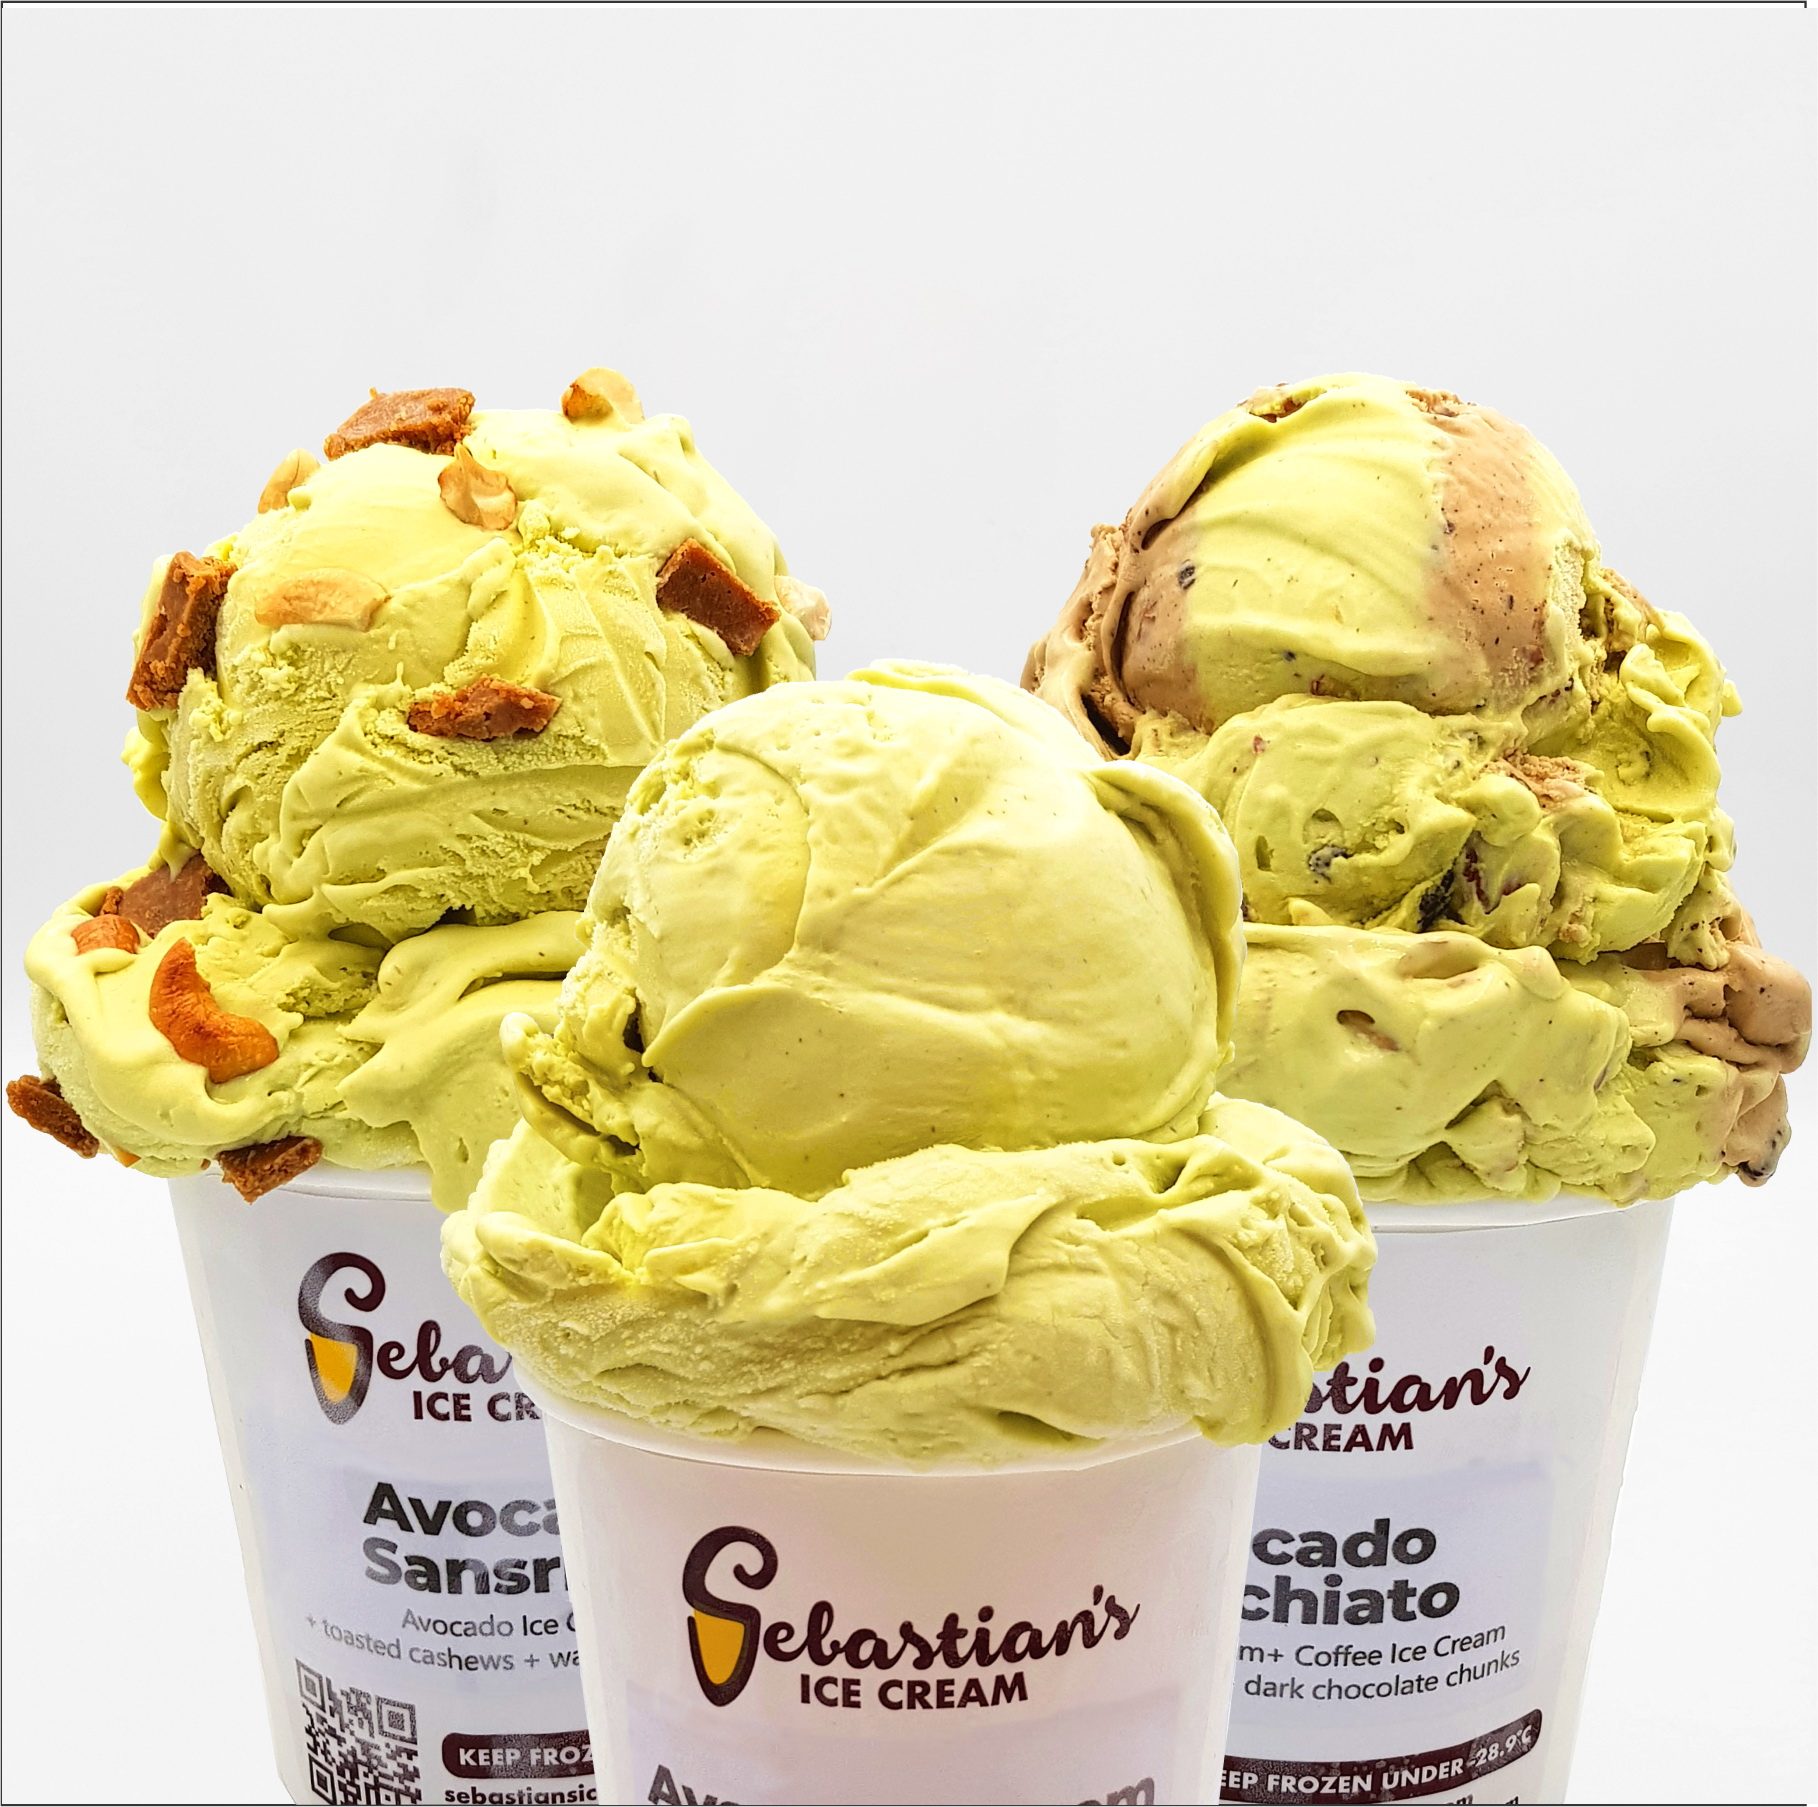 Try avocado sans rival ice cream from Sebastian’s